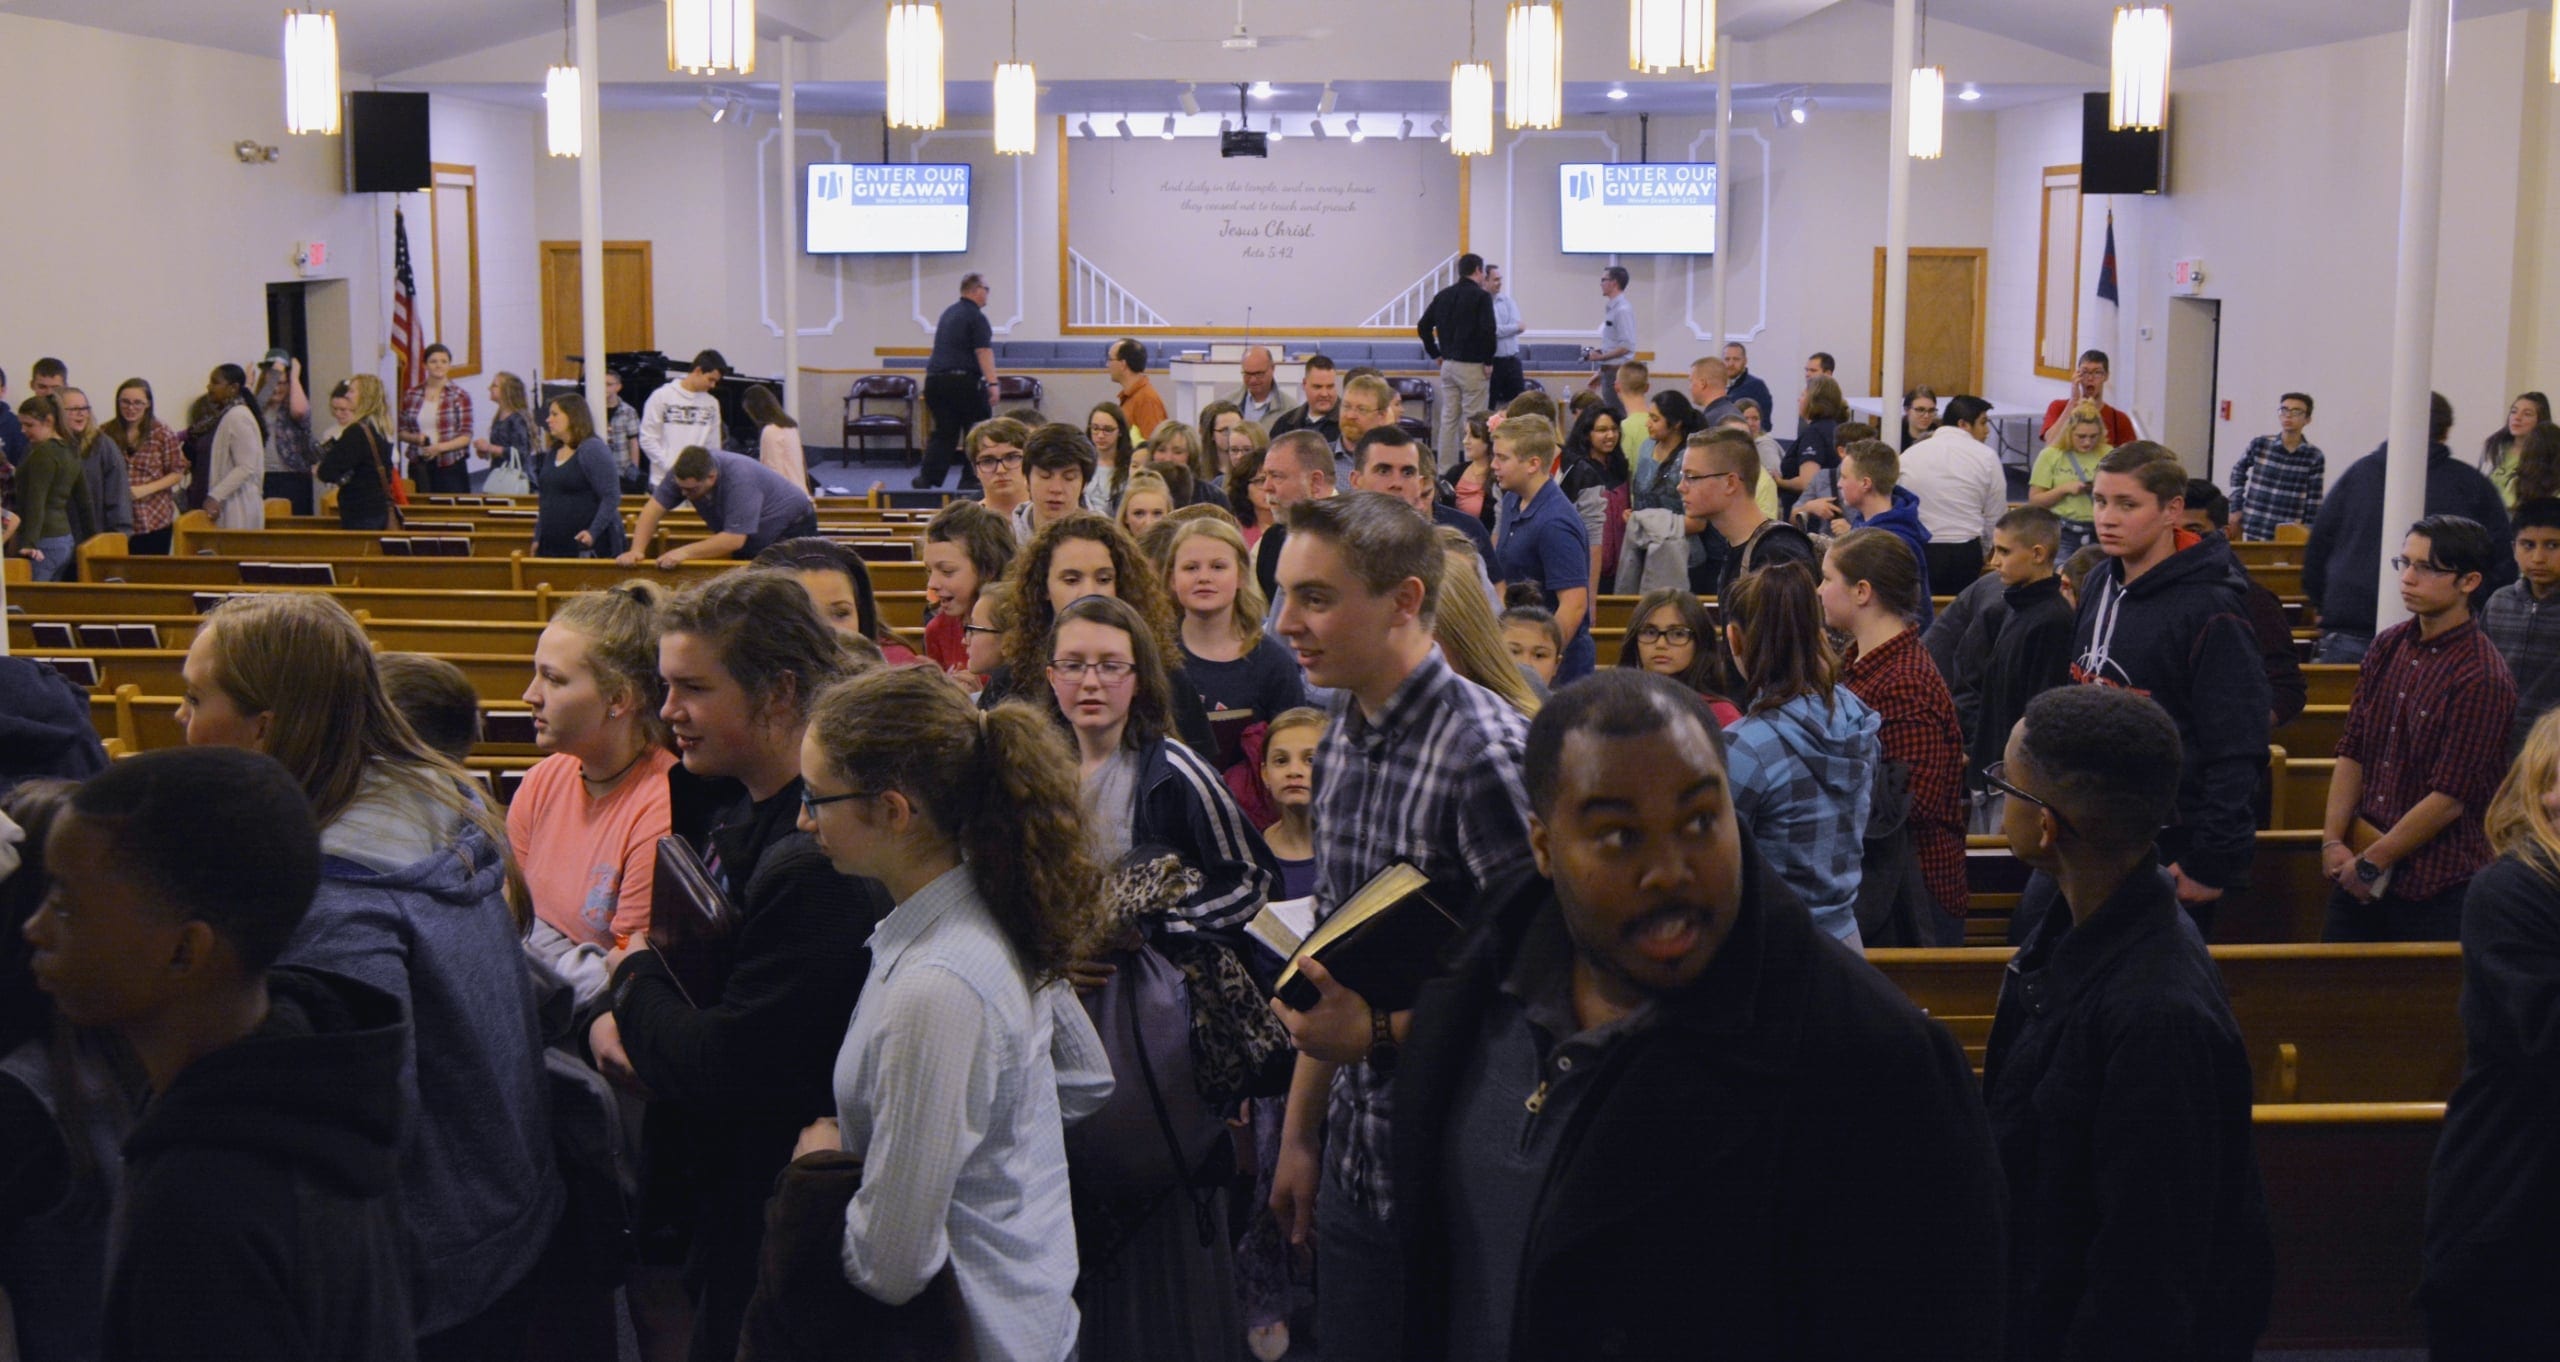 Church Events in Cincinnati, OH